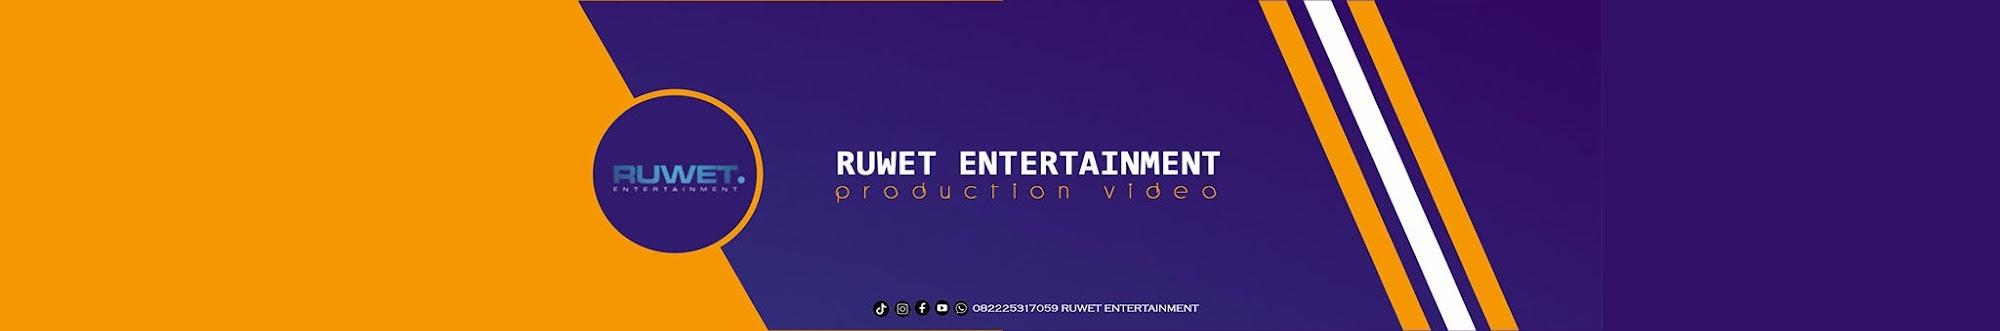 Ruwet Entertainment